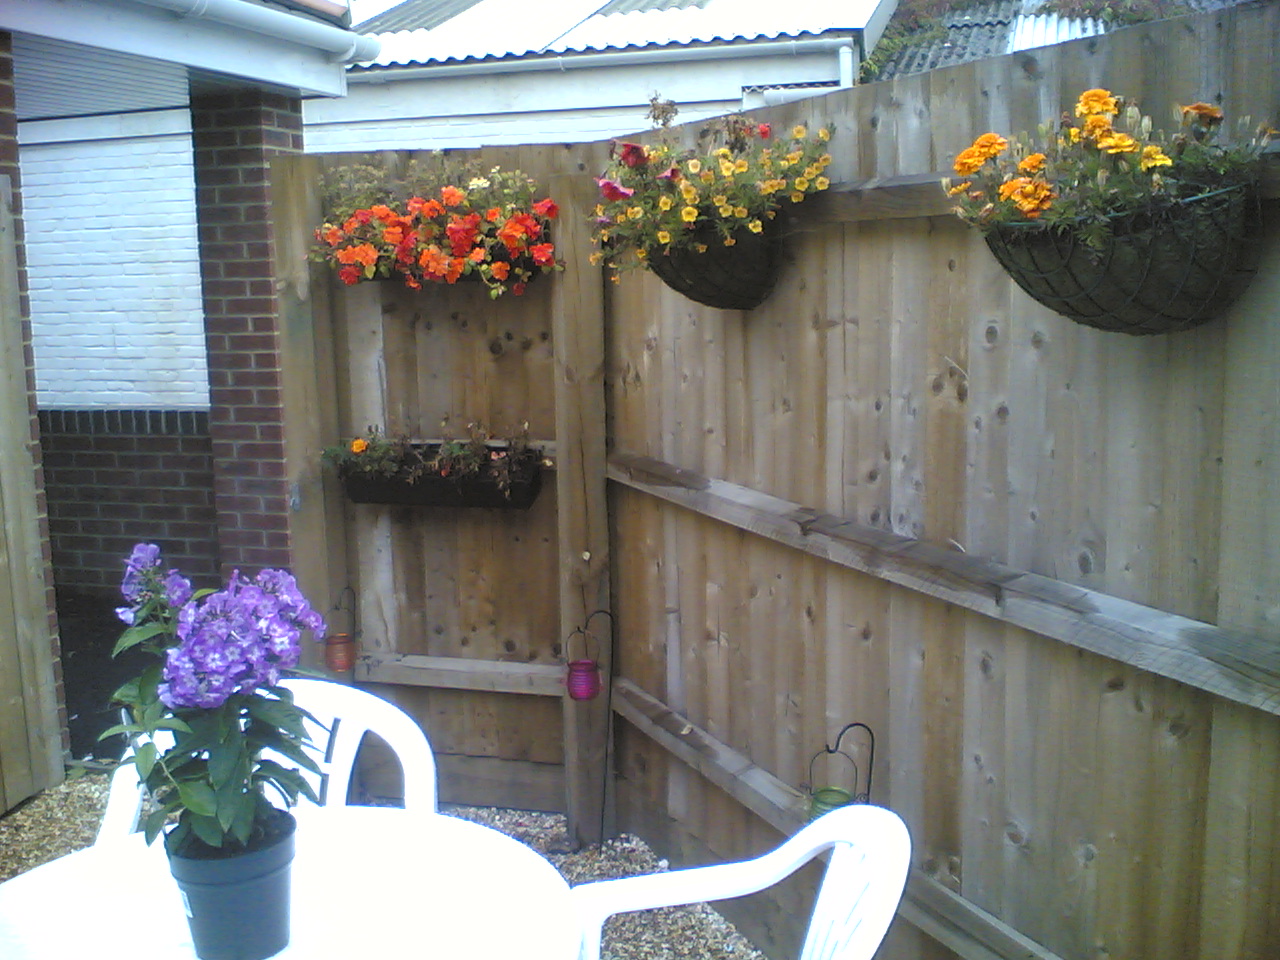 Our garden space